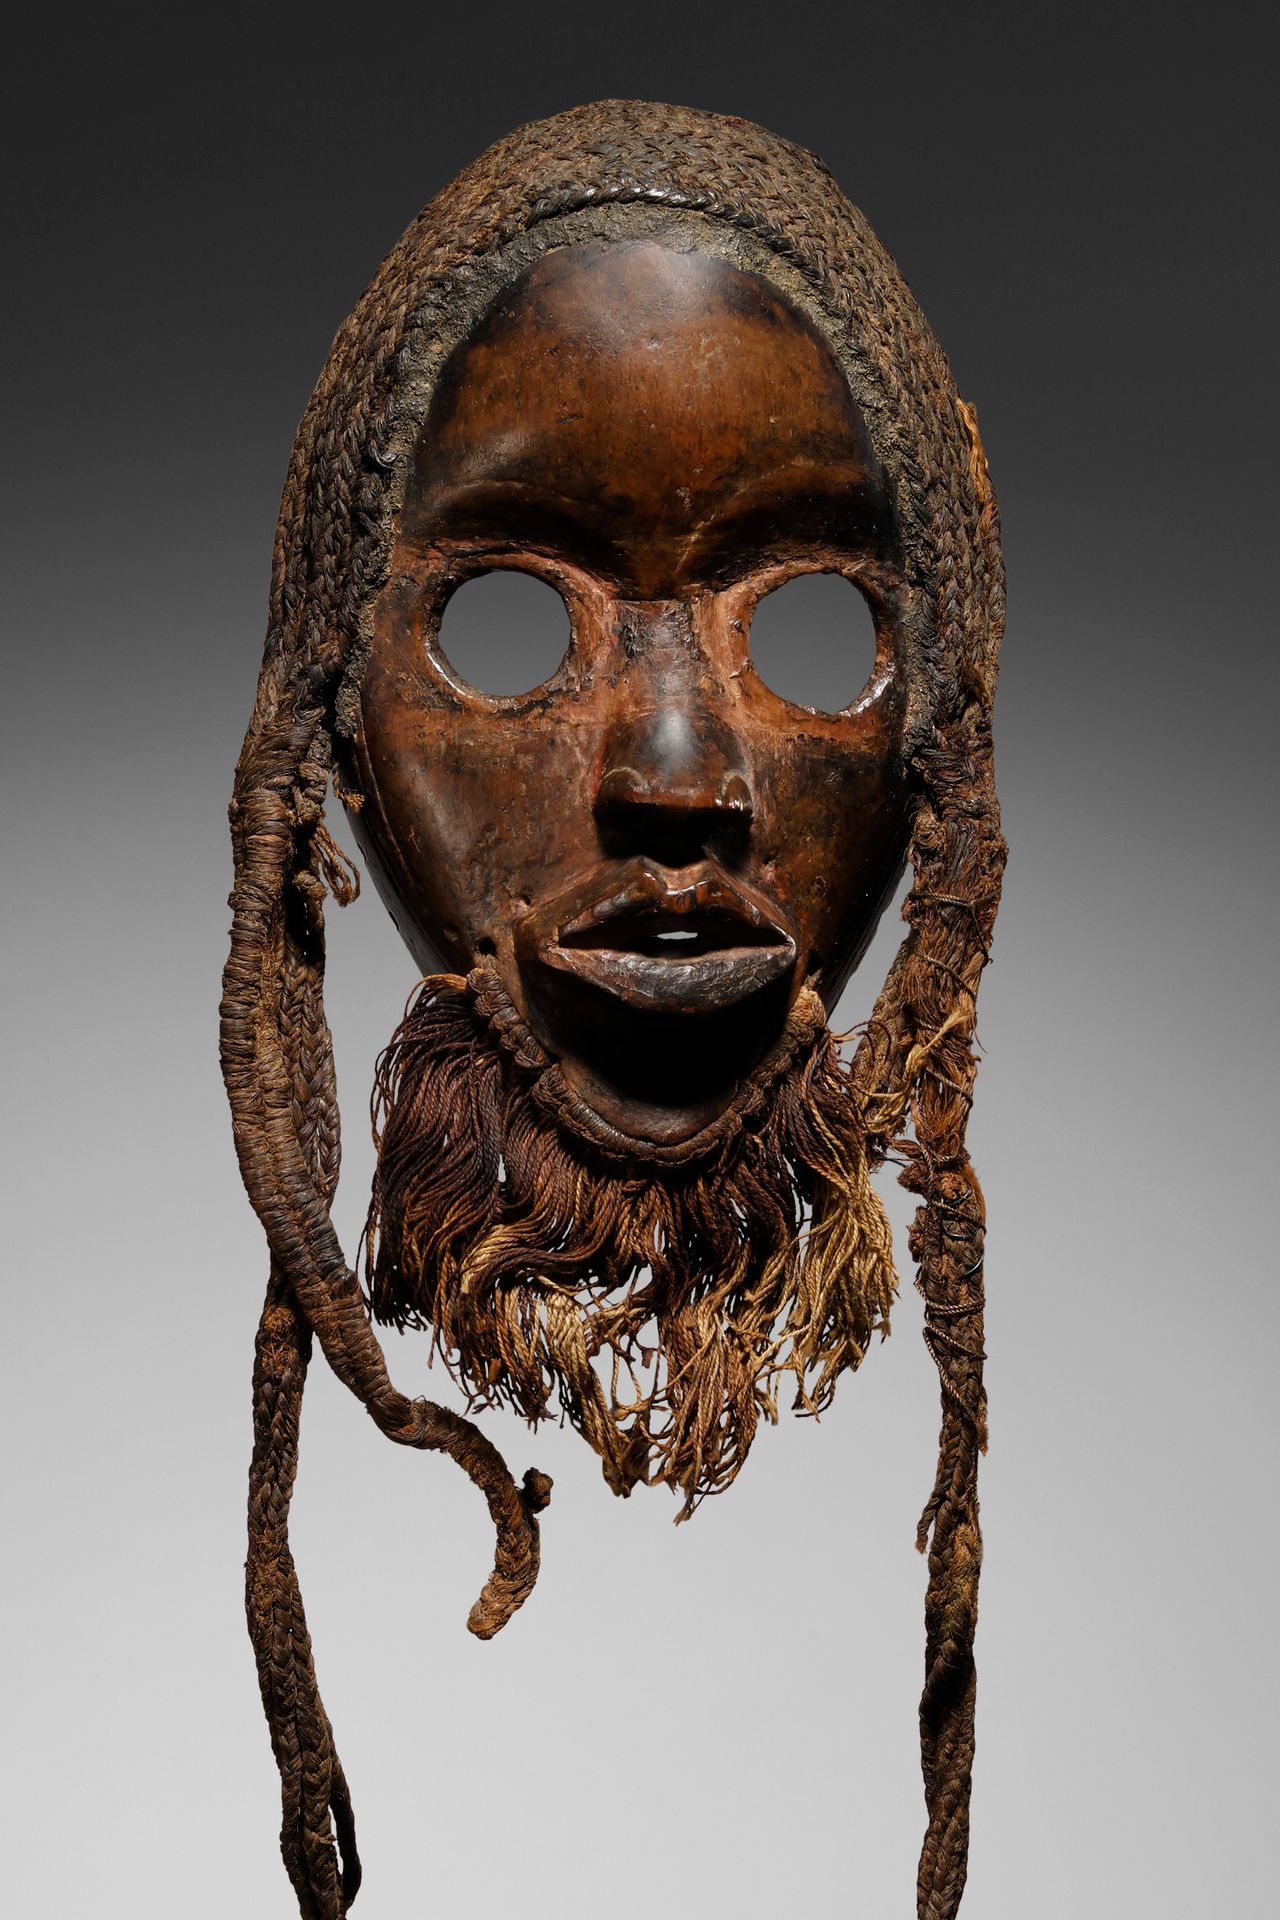 DAN MASK Ivory Coast

Wood and fibers

23 cm (mask) - 53 cm (total)

Provenance:&hellip;